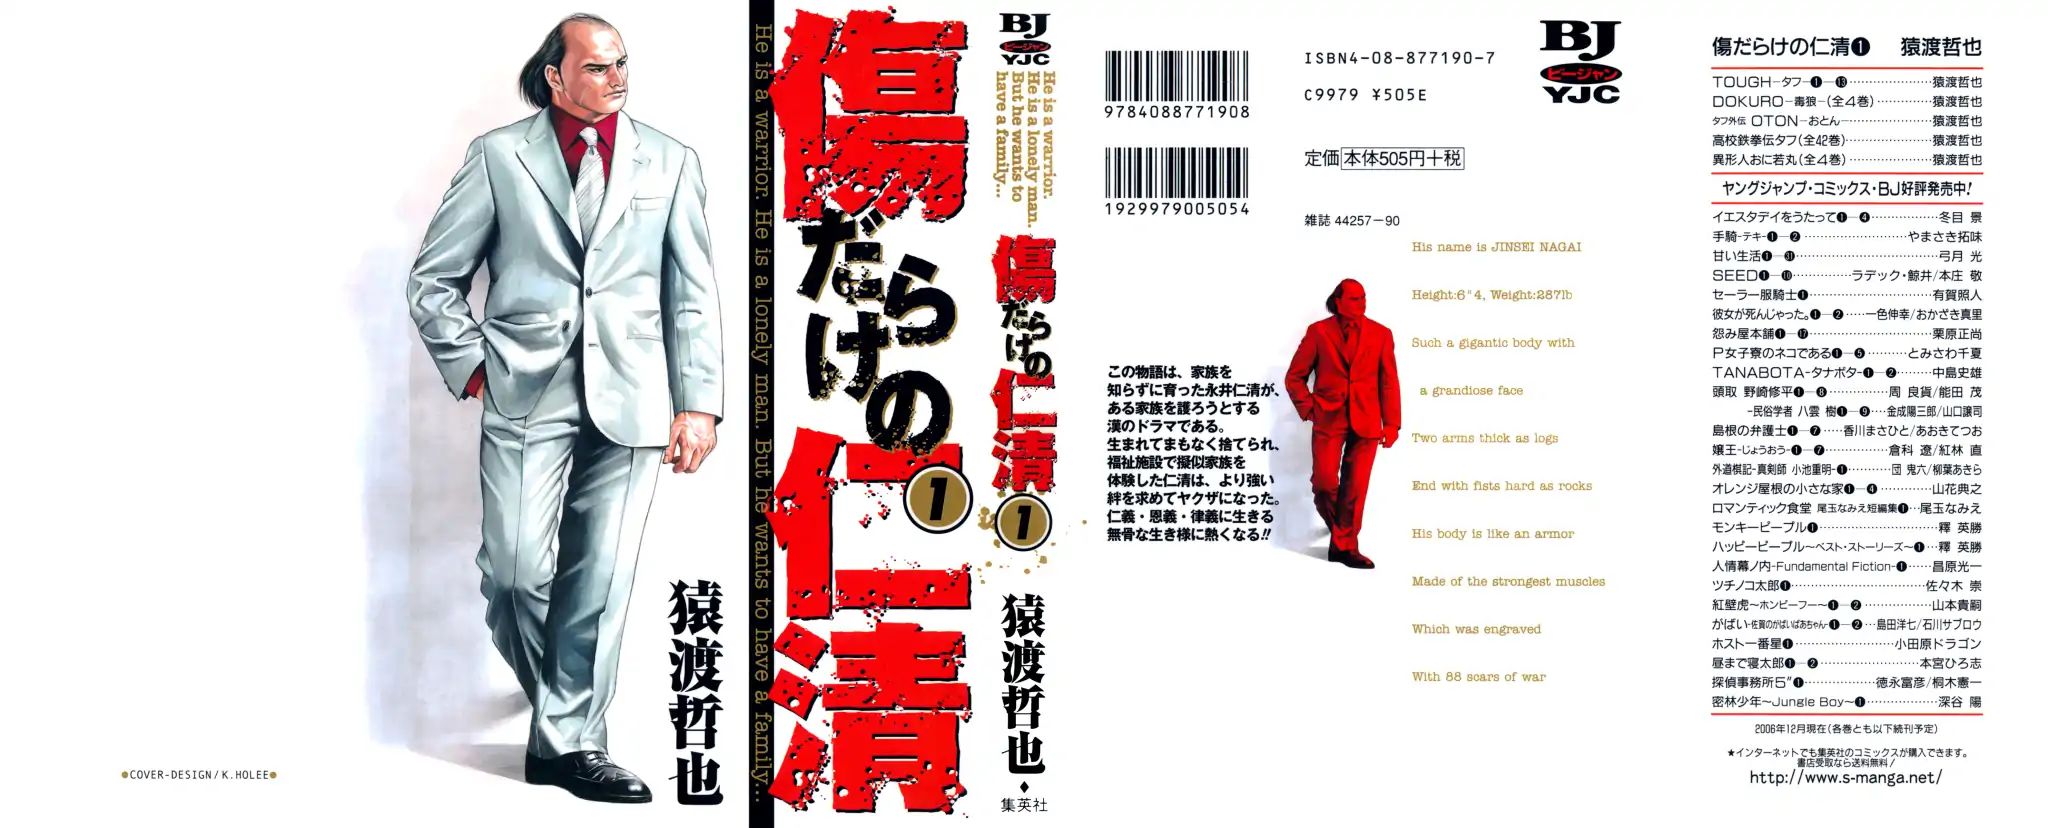 Kizu Darake No Jinsei Vol.1 Chapter 0: The Legendary Yakuza - Picture 1